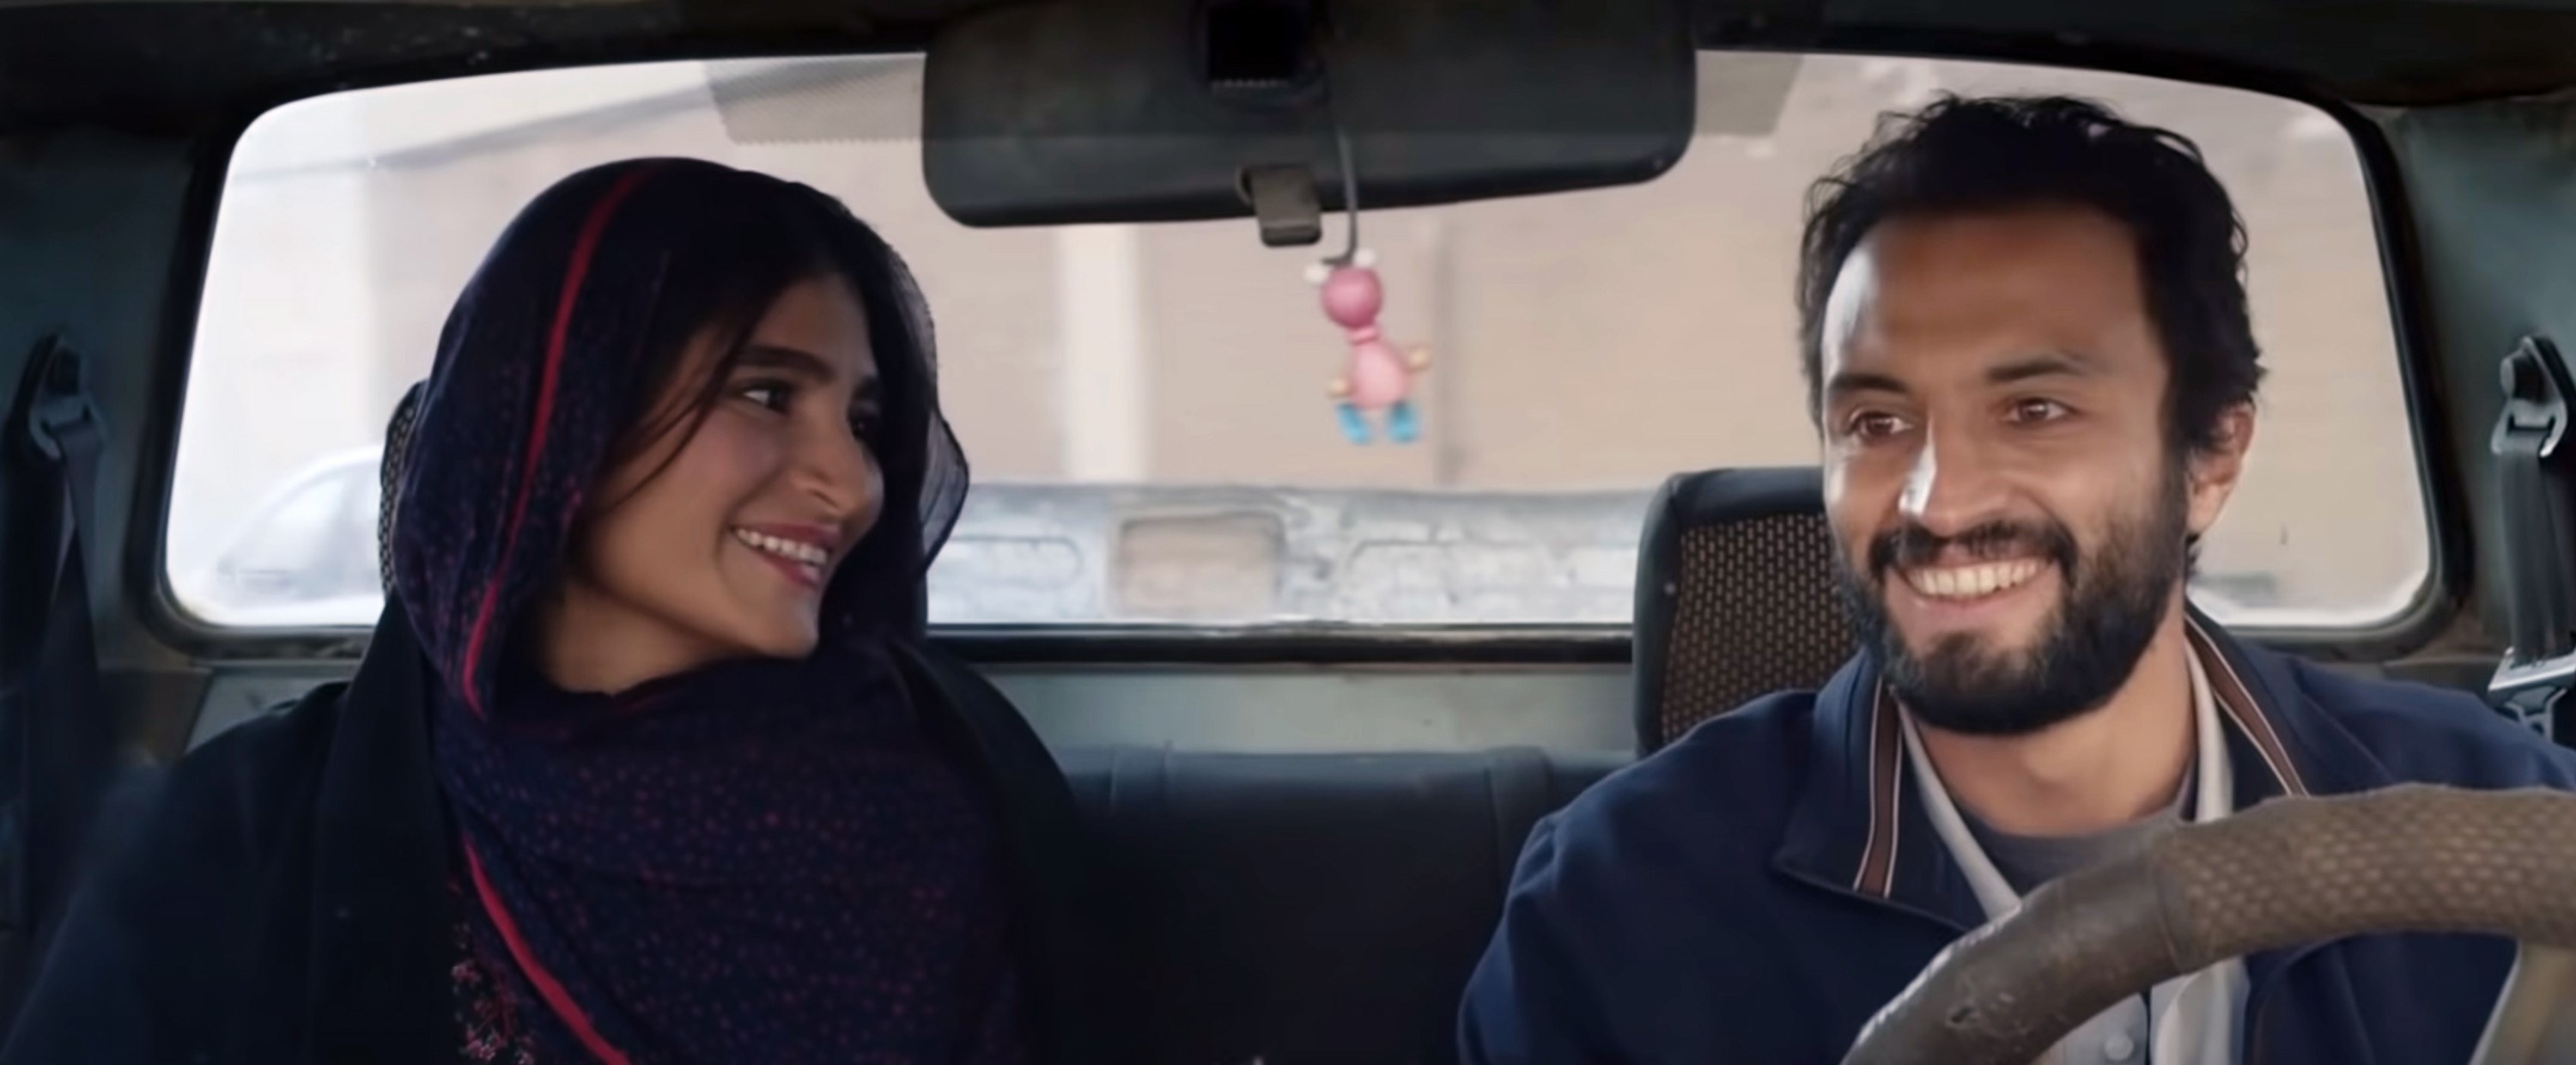 Sahar Goldust and Amir Jadidi sit in a car together